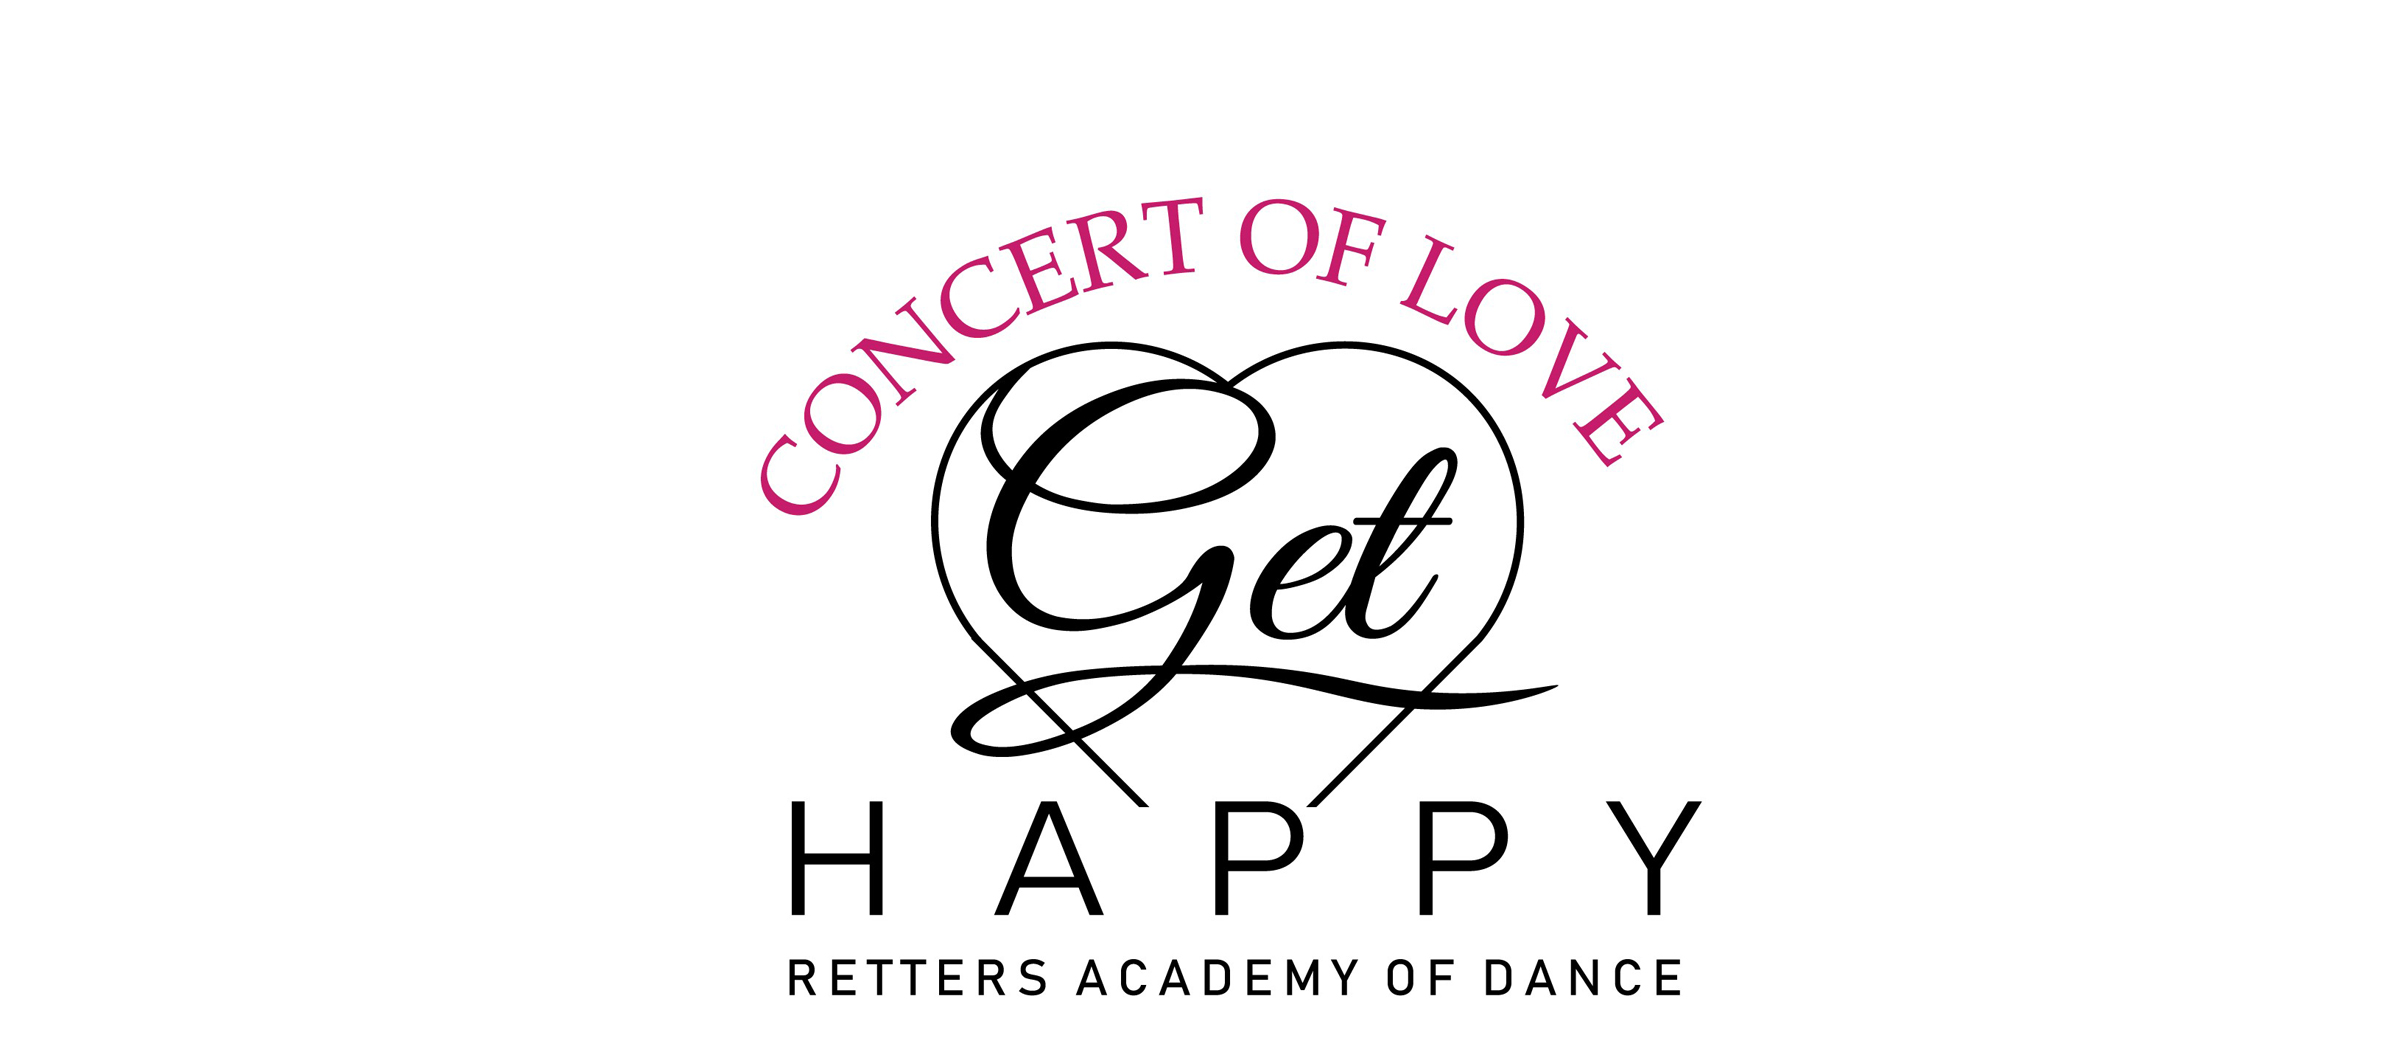 Concert of Love 2019: Get Happy